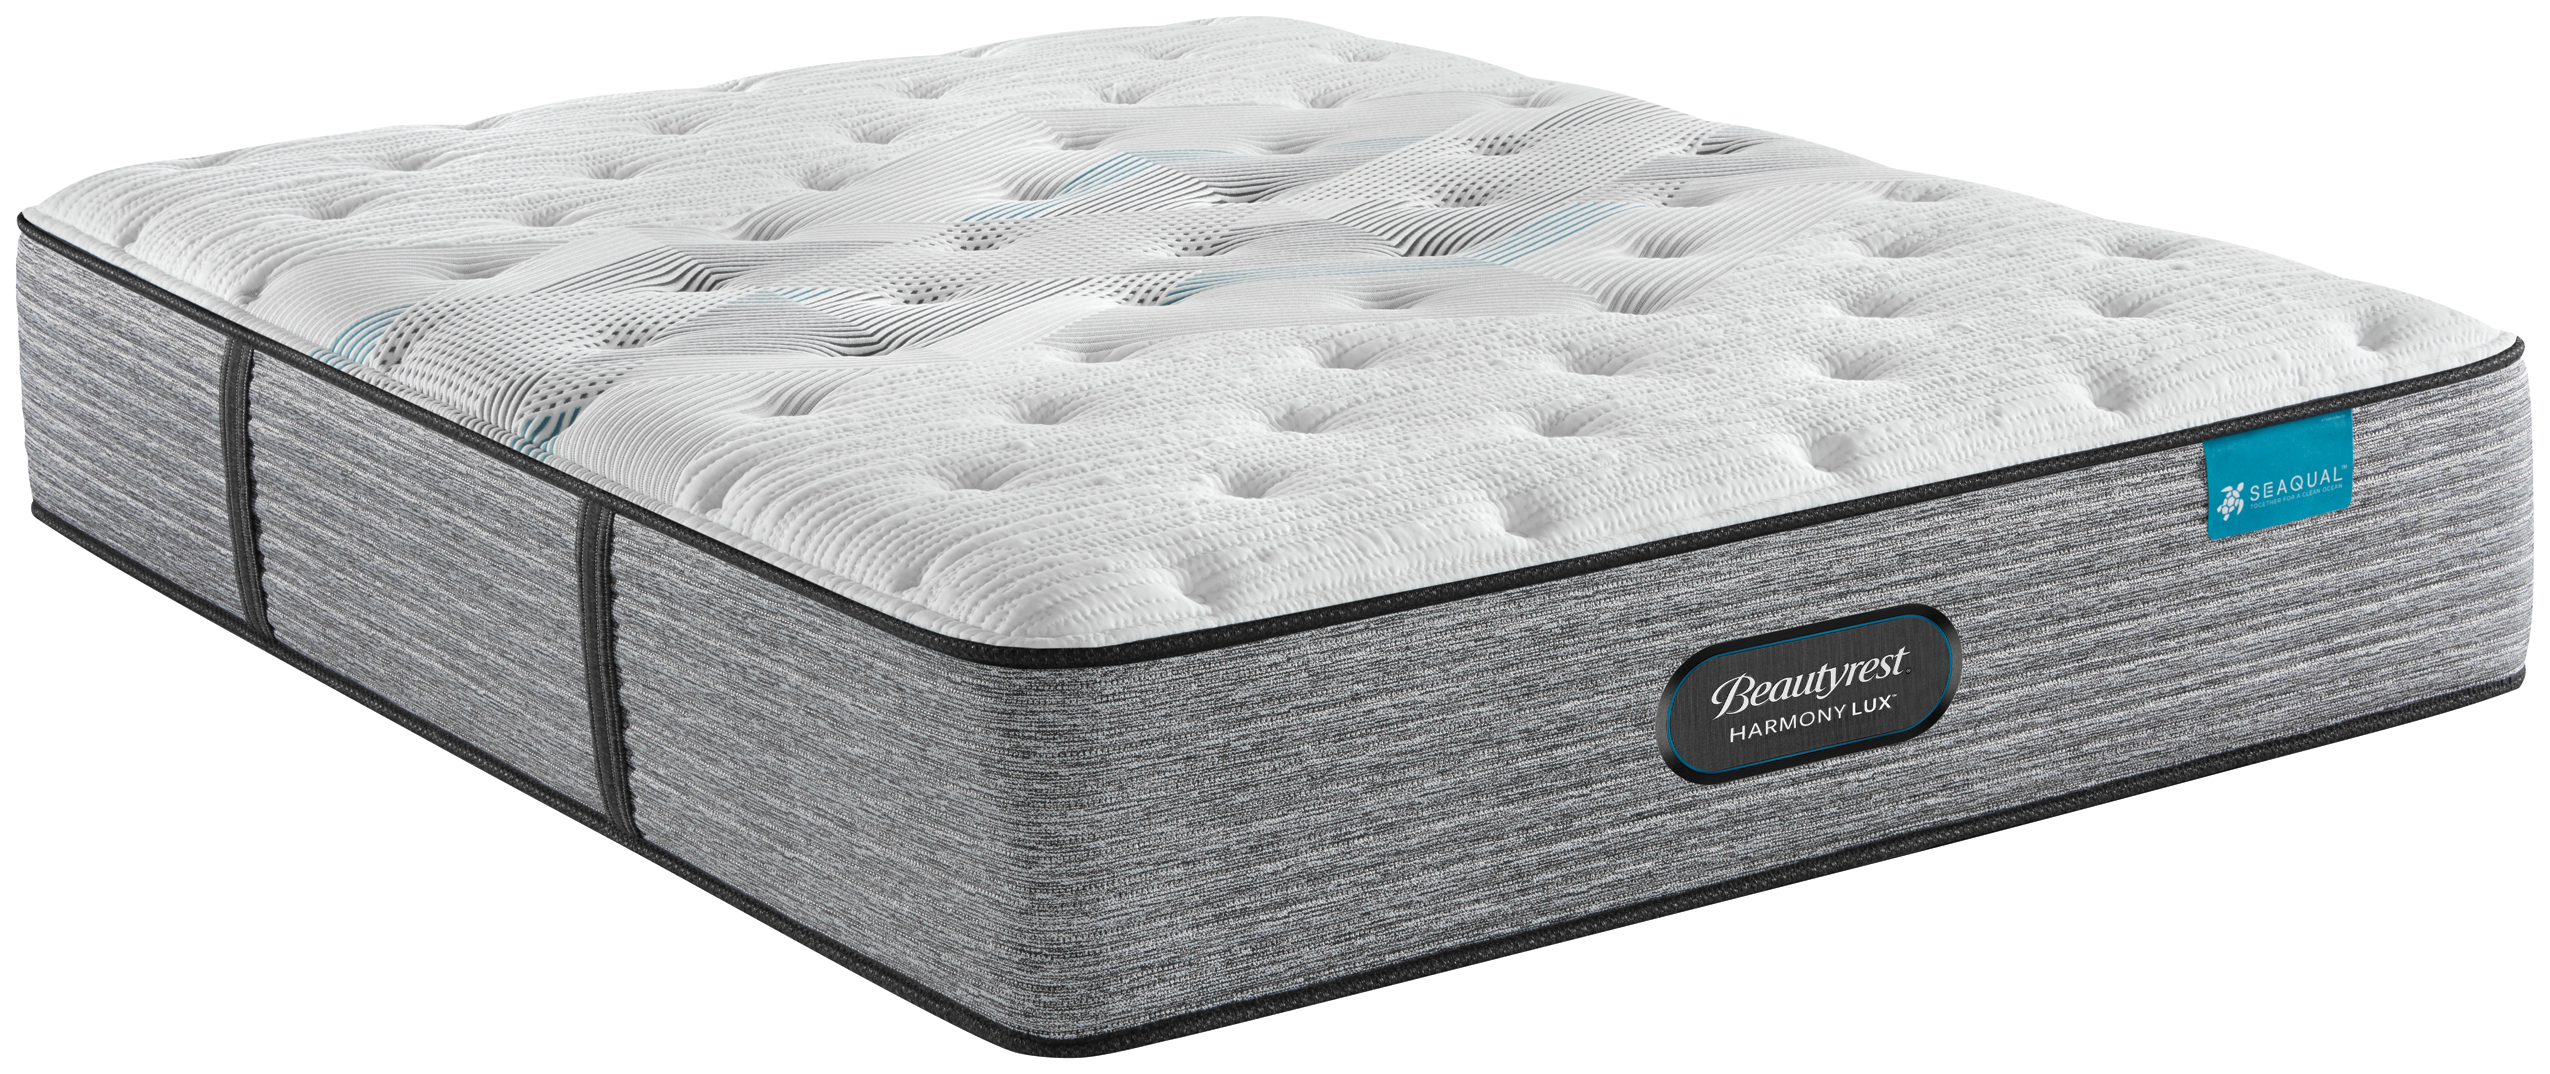 plush firm queen mattress